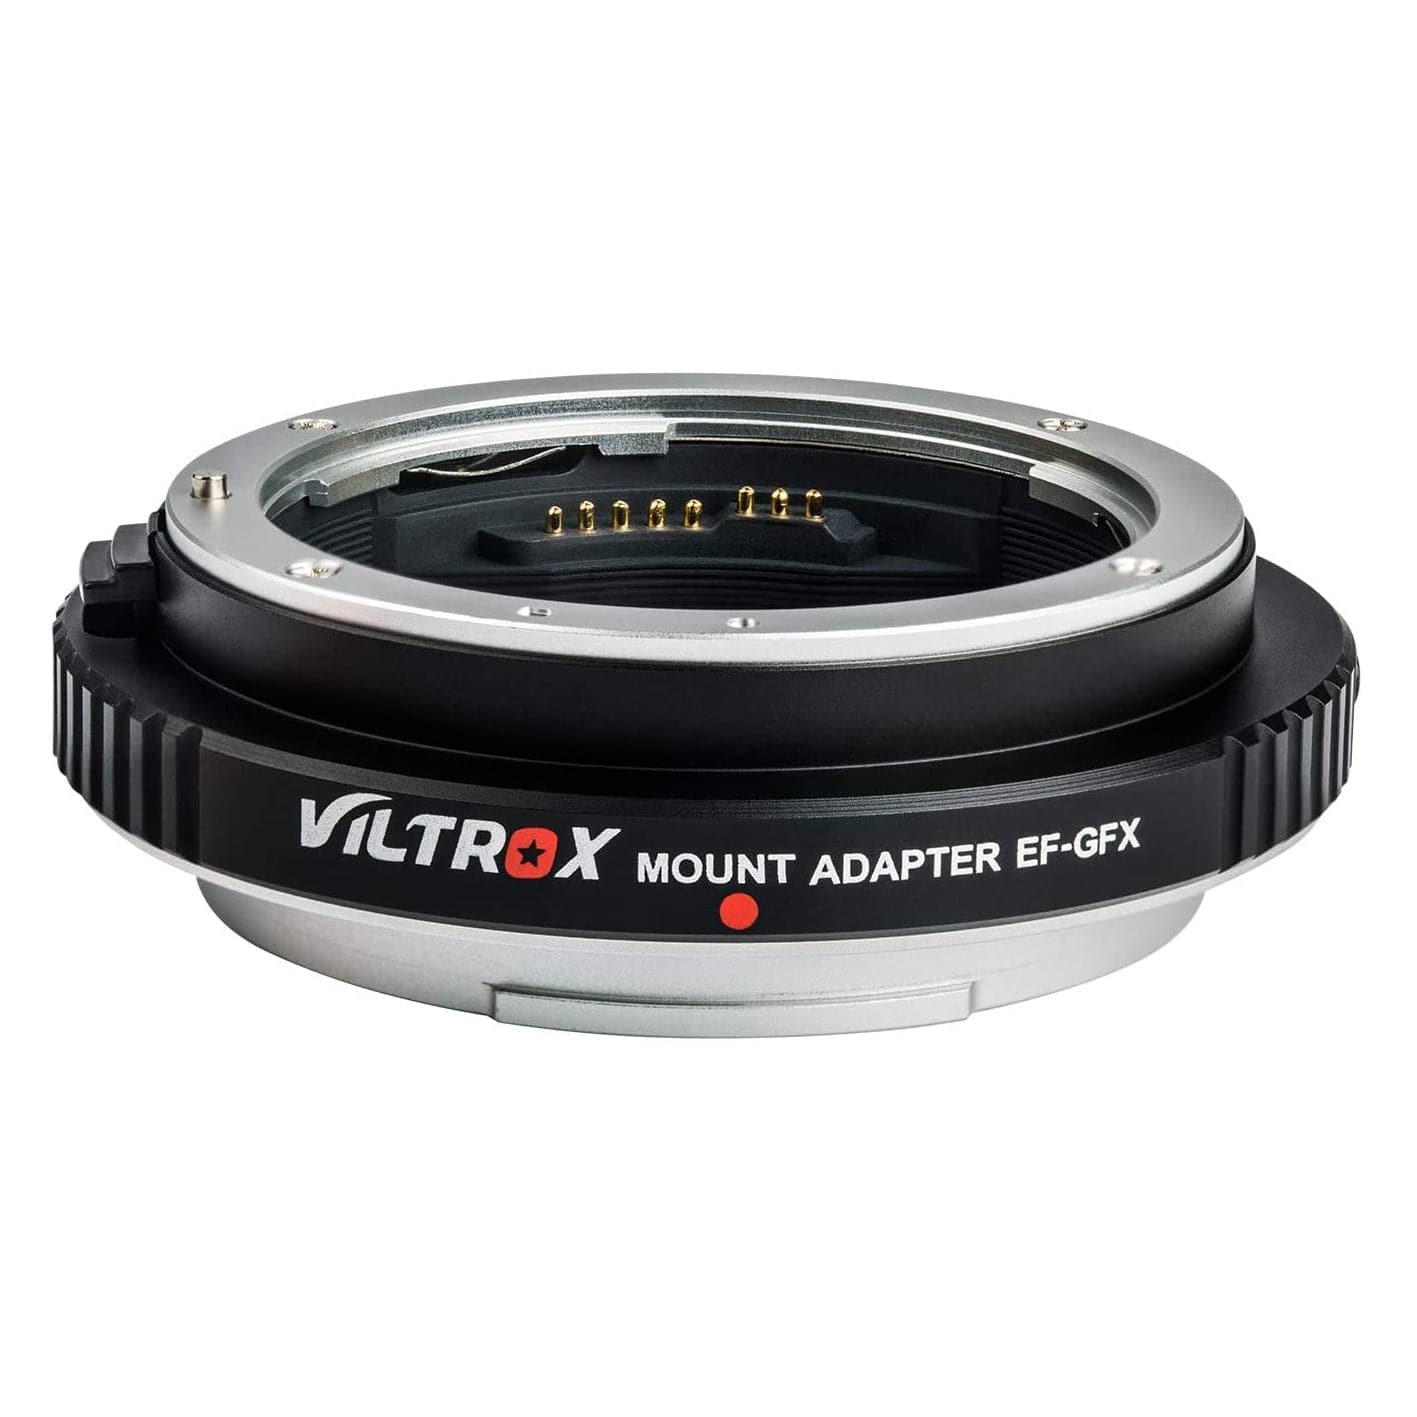 Viltrox EF-GFX/GFX Pro adapter